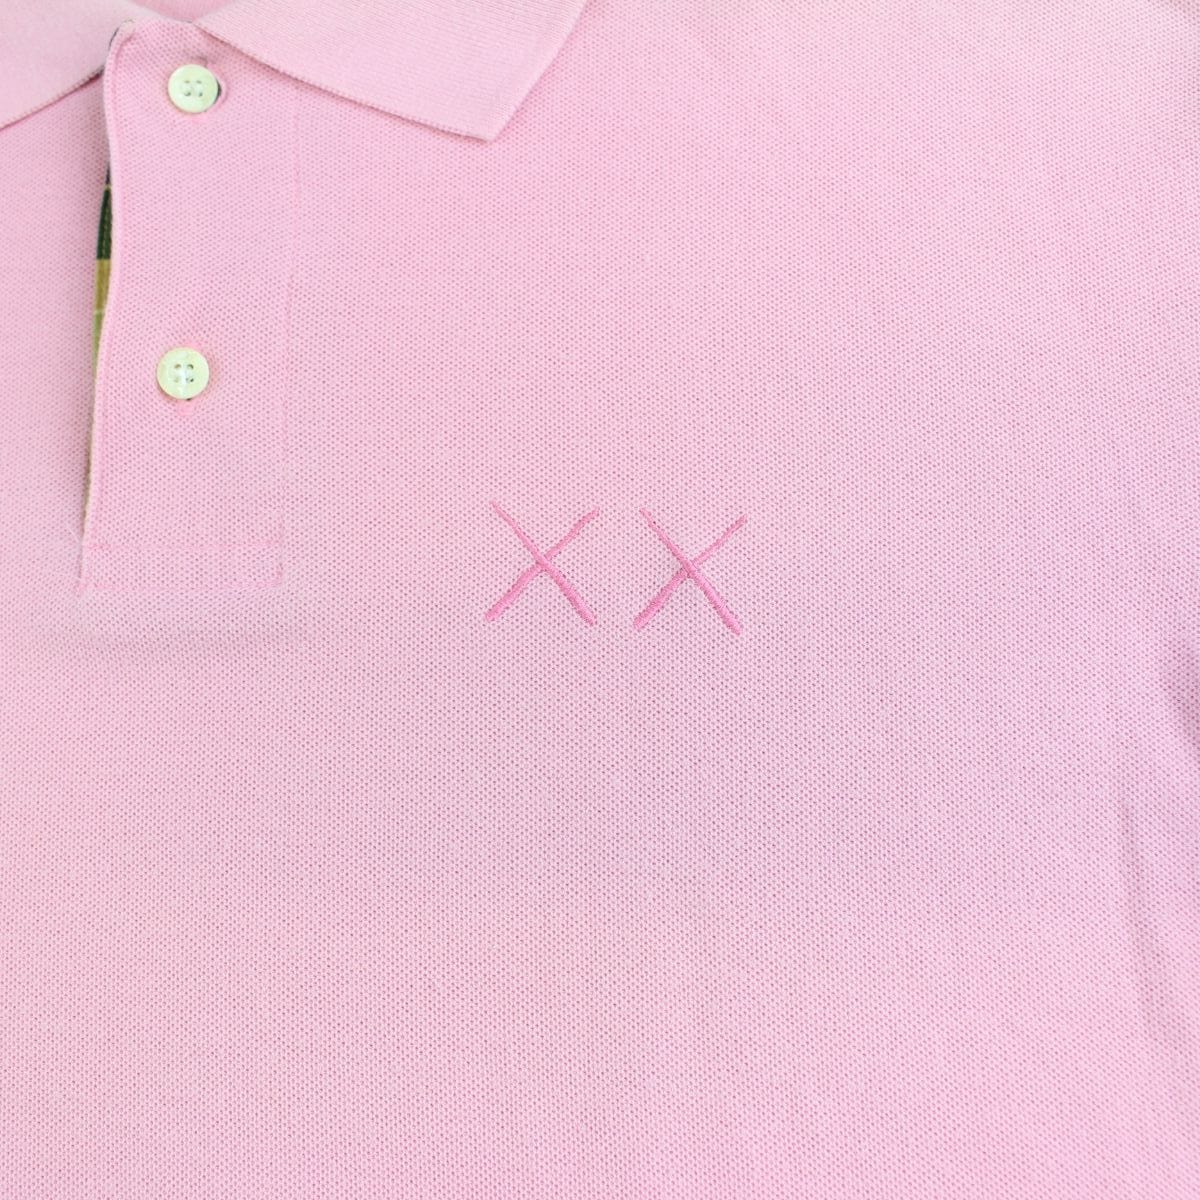 Bape x Kaws Polo Shirt Pink - SARUUK